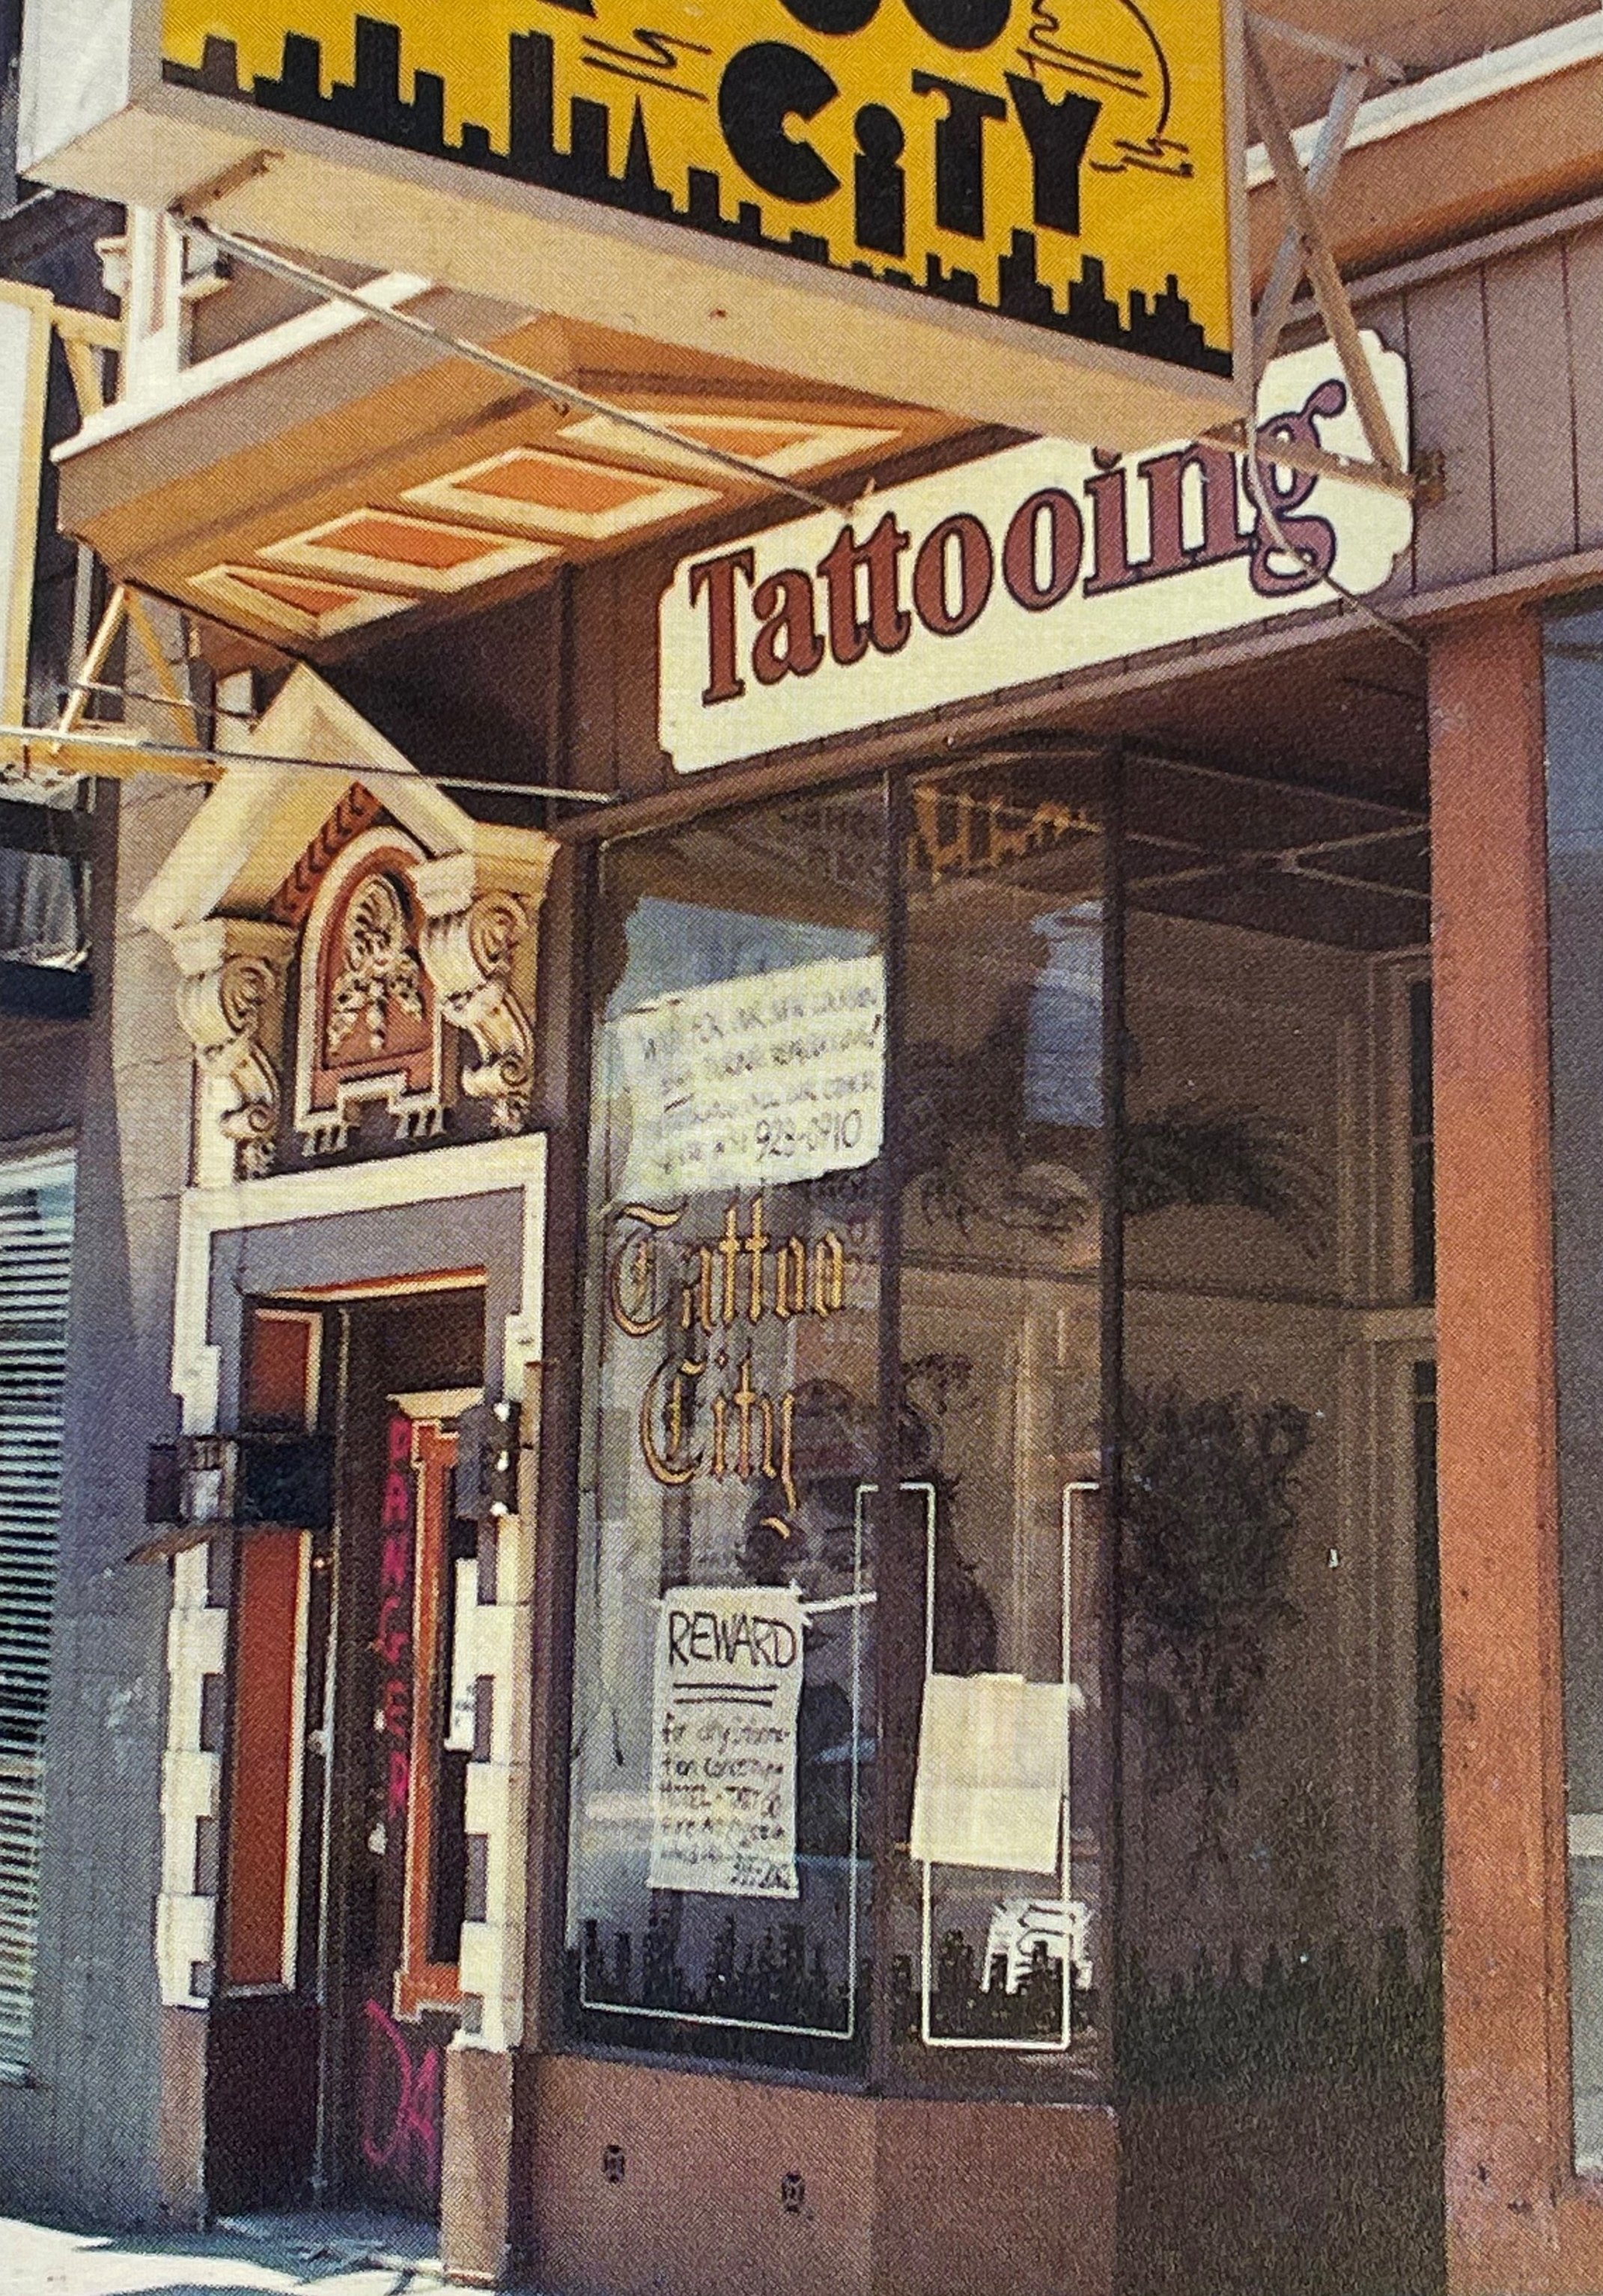 Sixth Street Tattoo Studio | Shops (Non Food) | News | Radstock Nub News